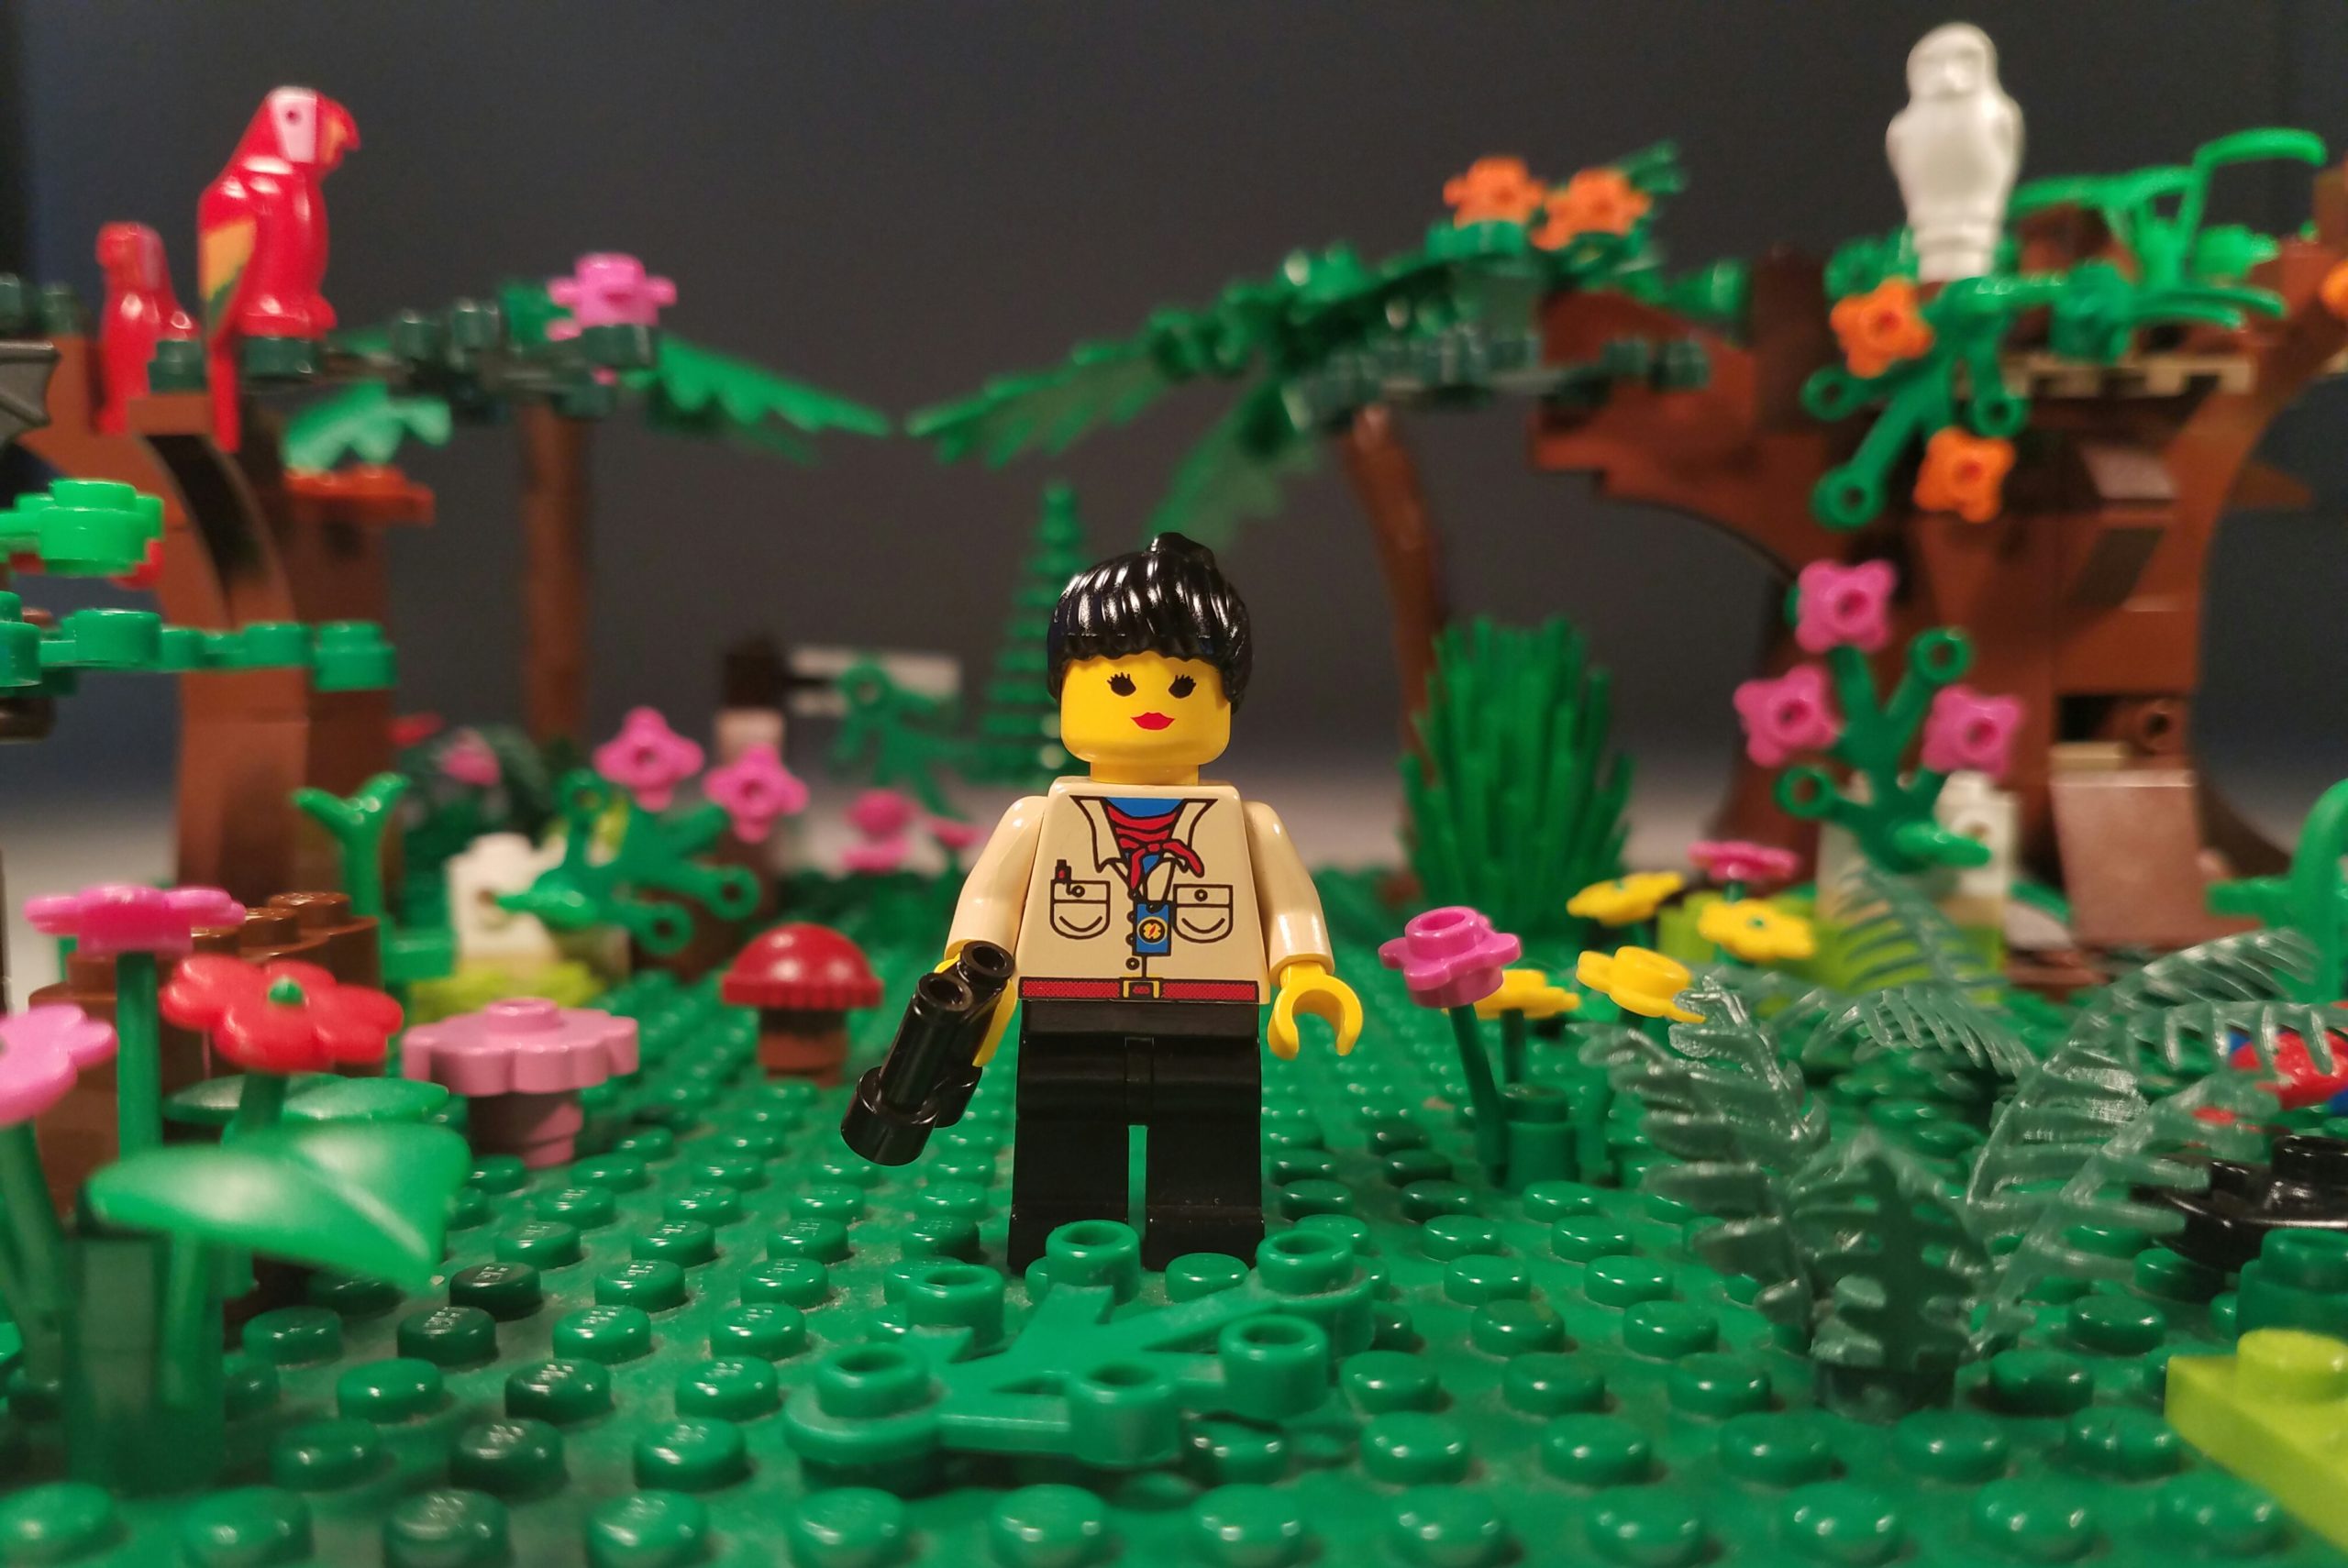 LEGO Biologist by Jacinta Humphrey